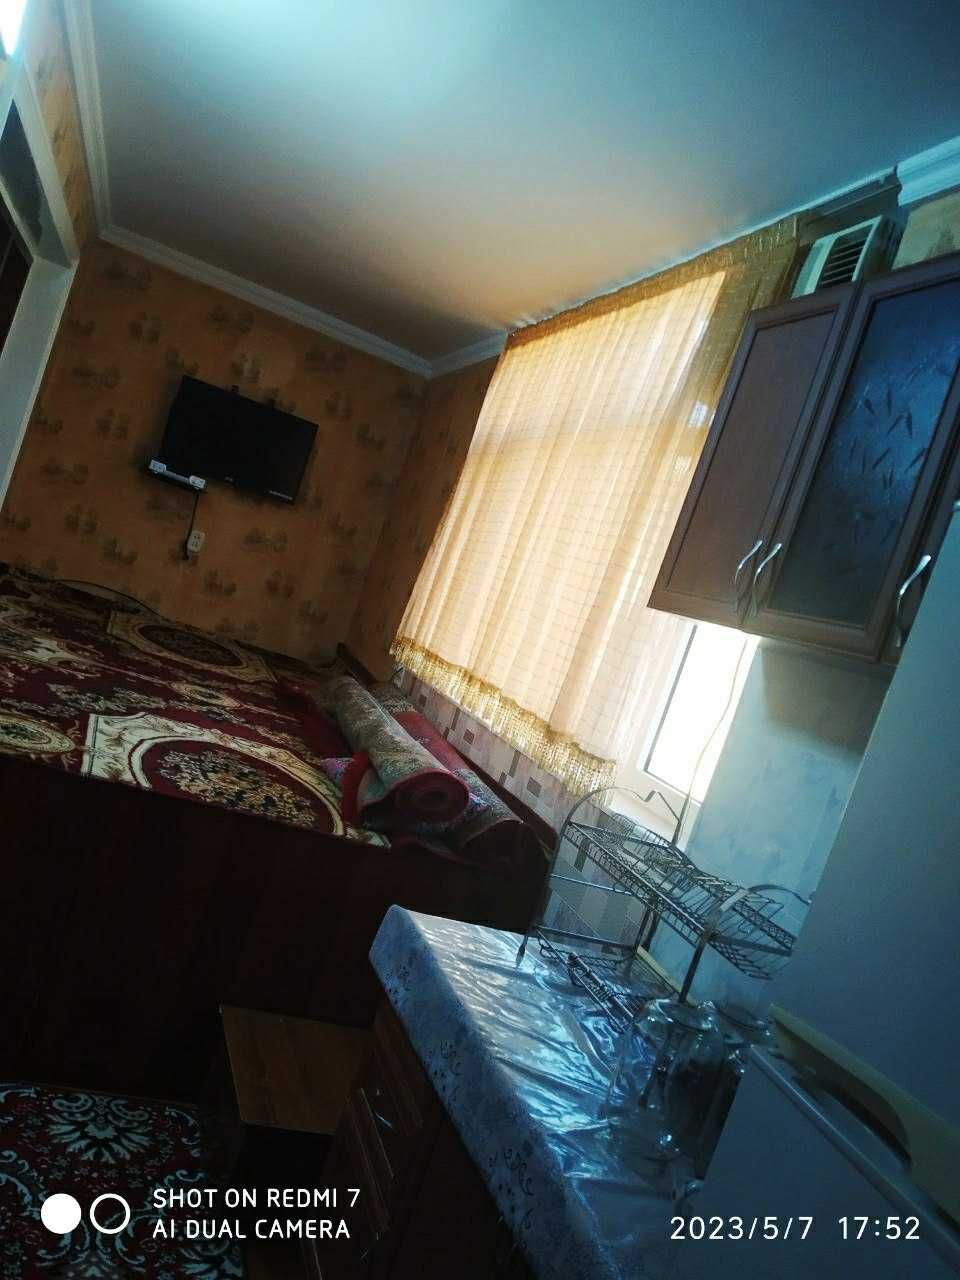 Квартира 3хоналик арендага берилади барча жихозлари бор